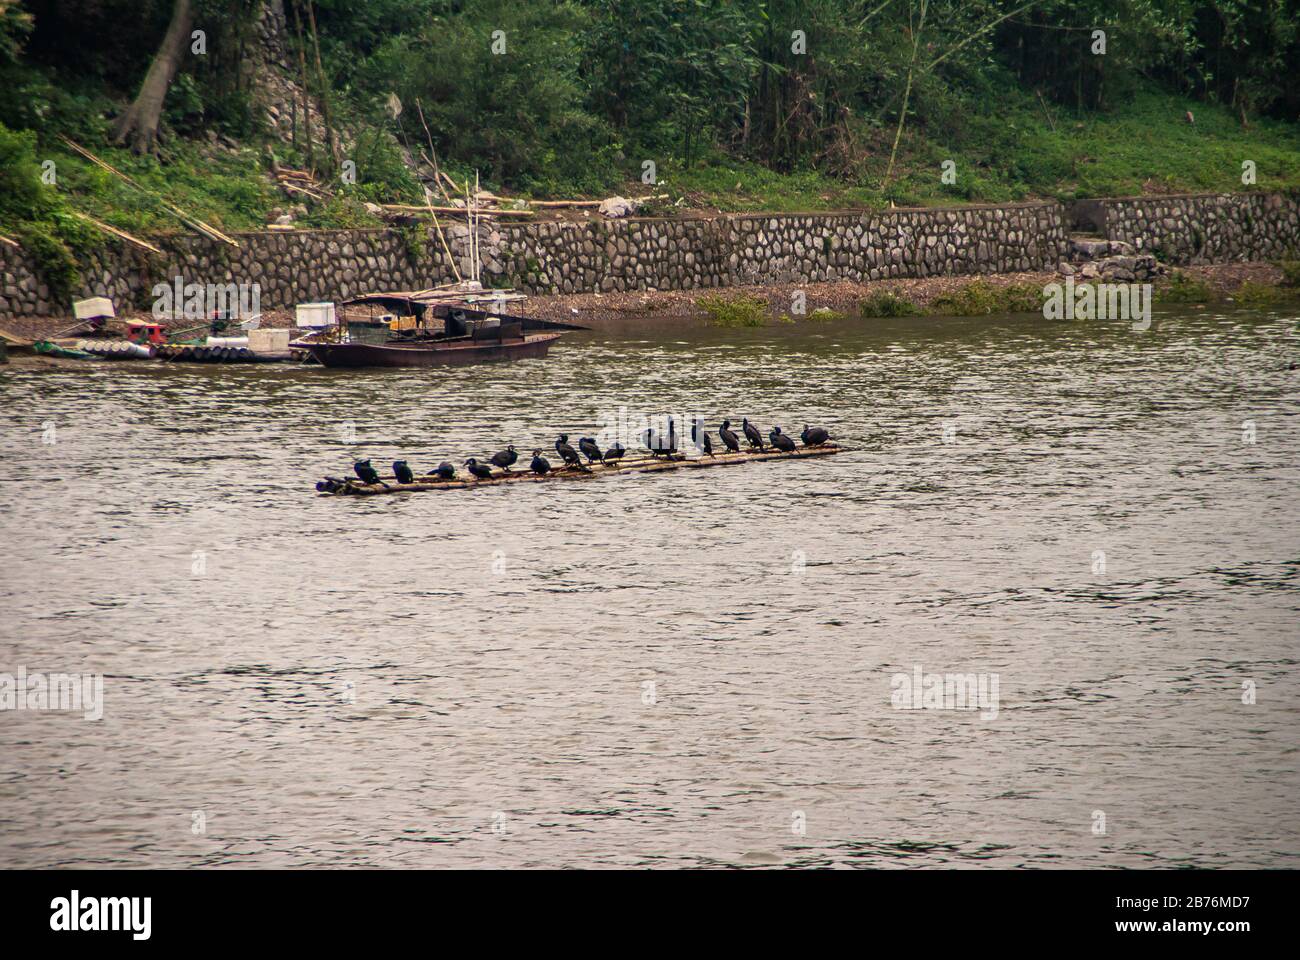 Guilin, China - 10. Mai 2010: Entlang Des Flusses Li. Flimmes Floß mit schwarzen kormoranten Vögeln in der Nähe eines Fischer-Bootes entlang steinverstärkter Küstenlinie mit g Stockfoto